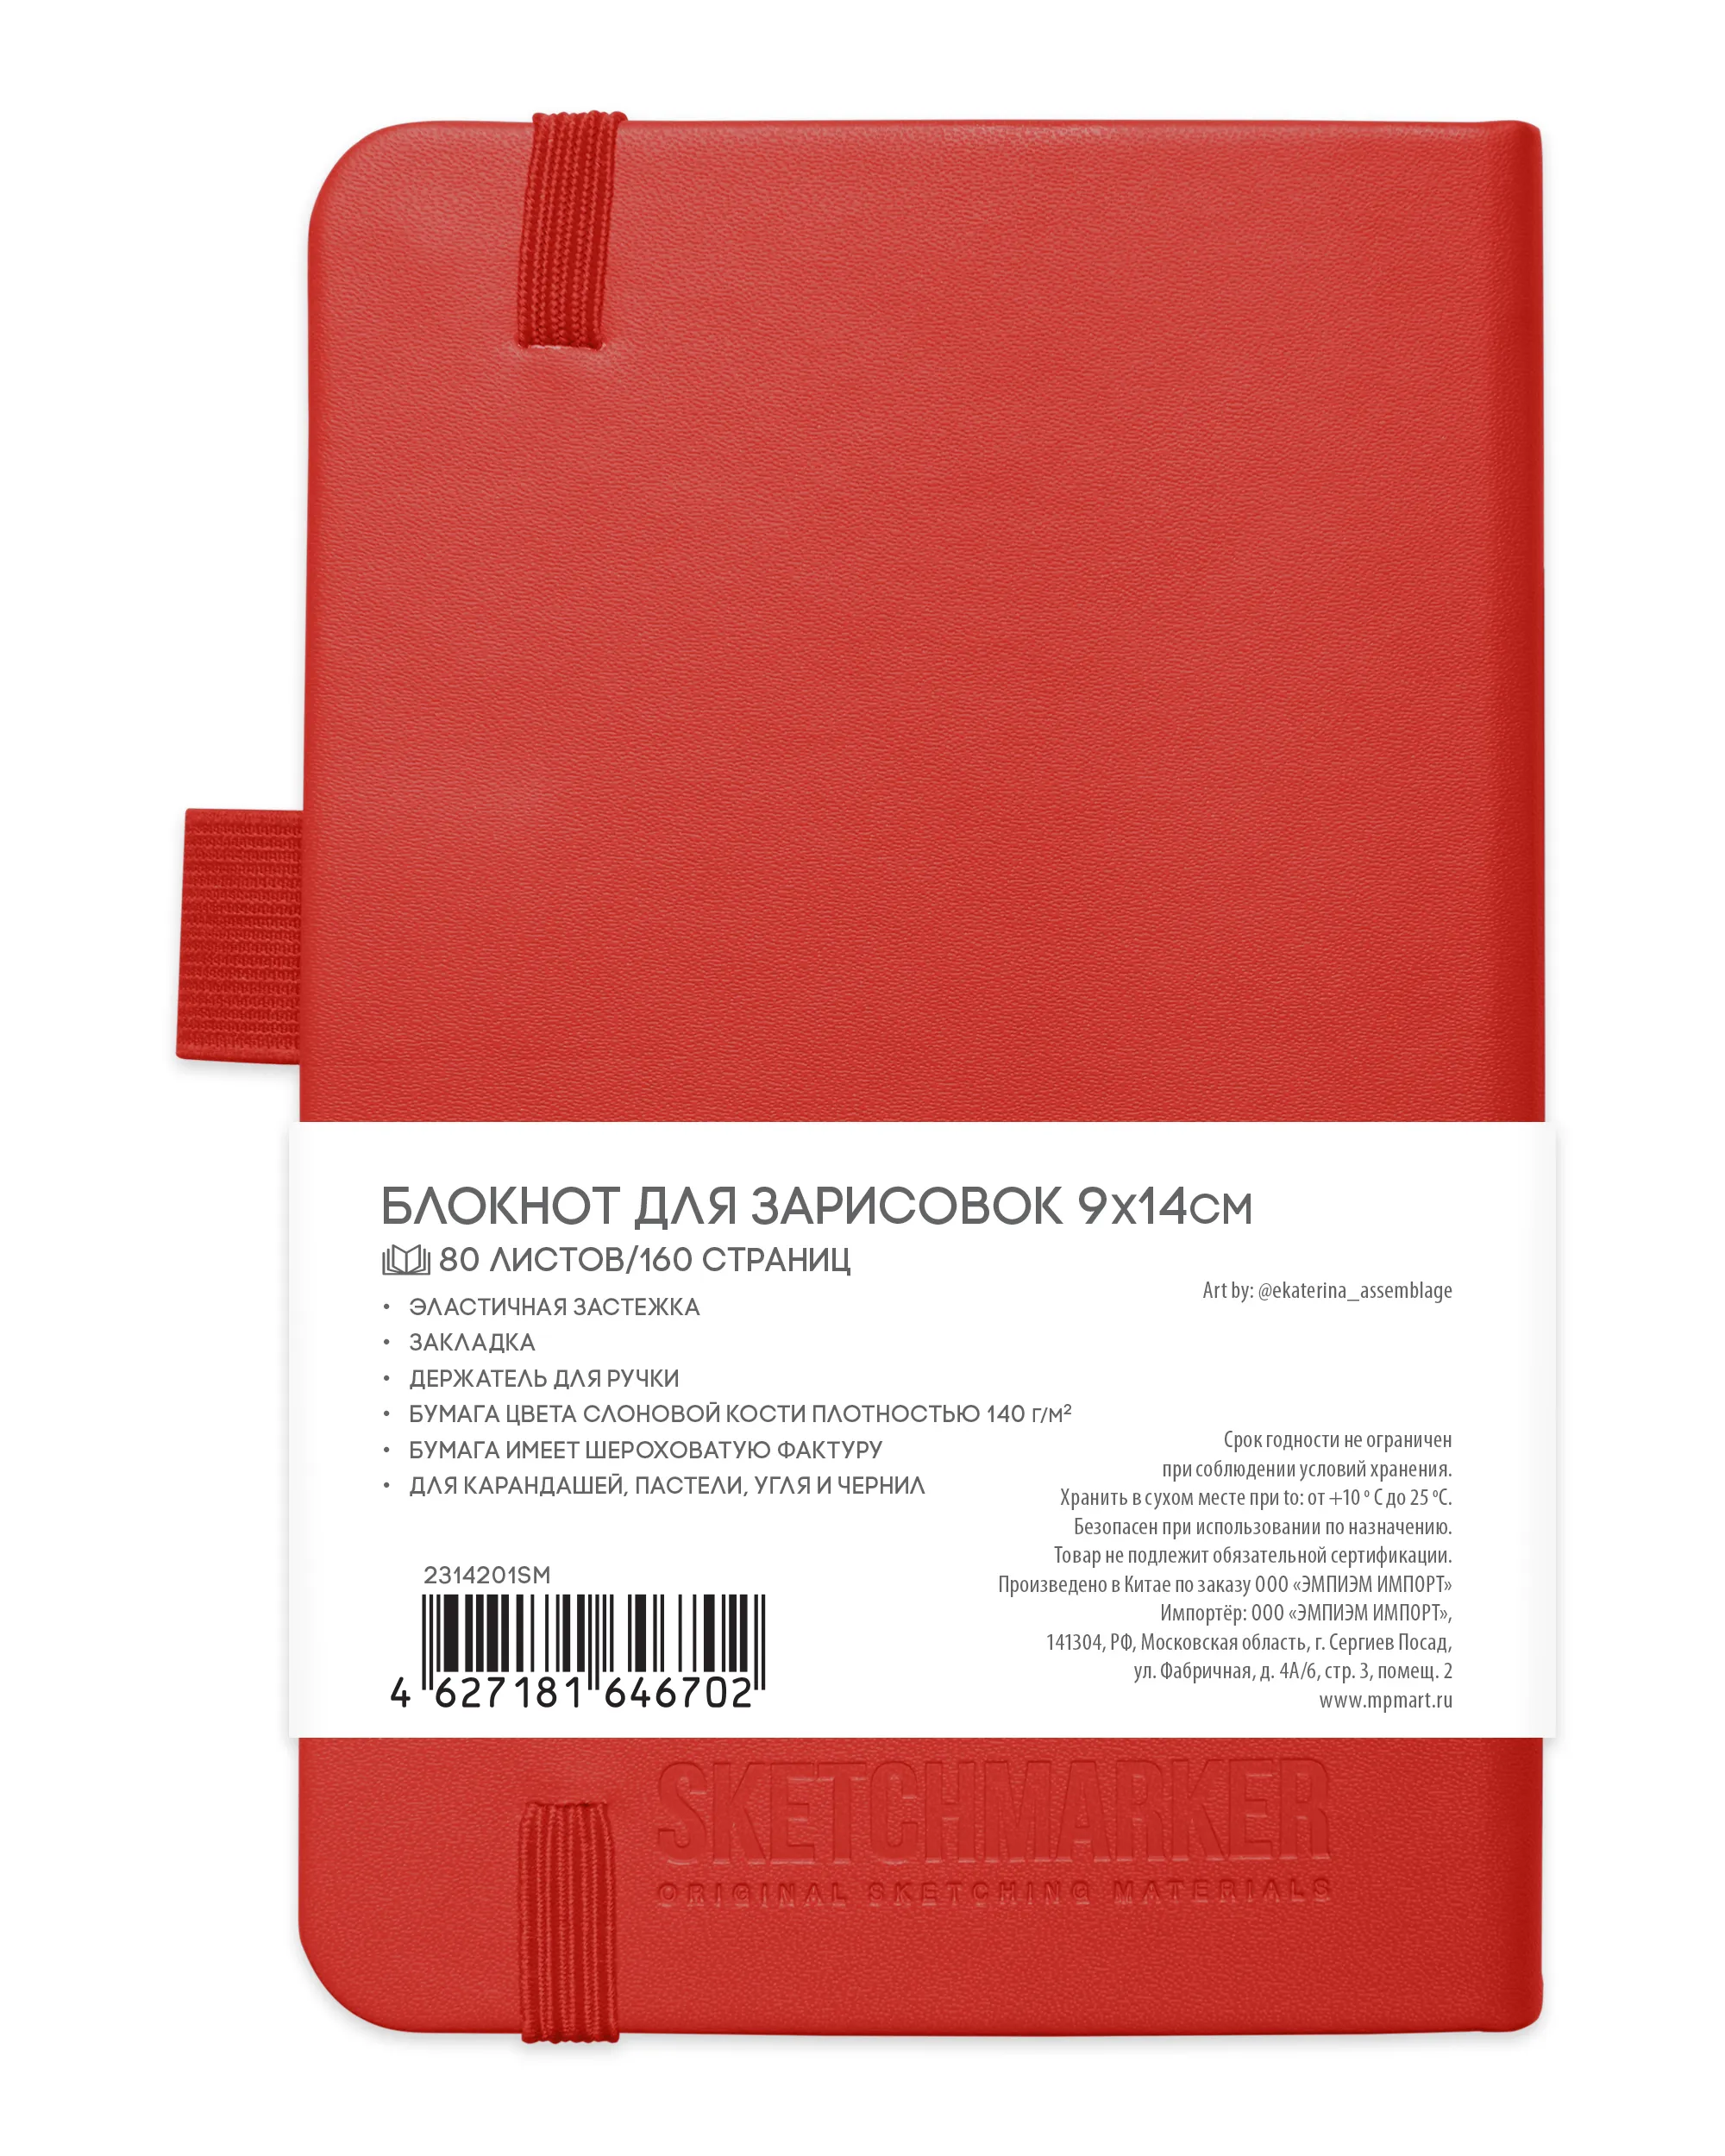 Блокнот для зарисовок Sketchmarker 140г/кв.м 9*14см 80л (Красный)